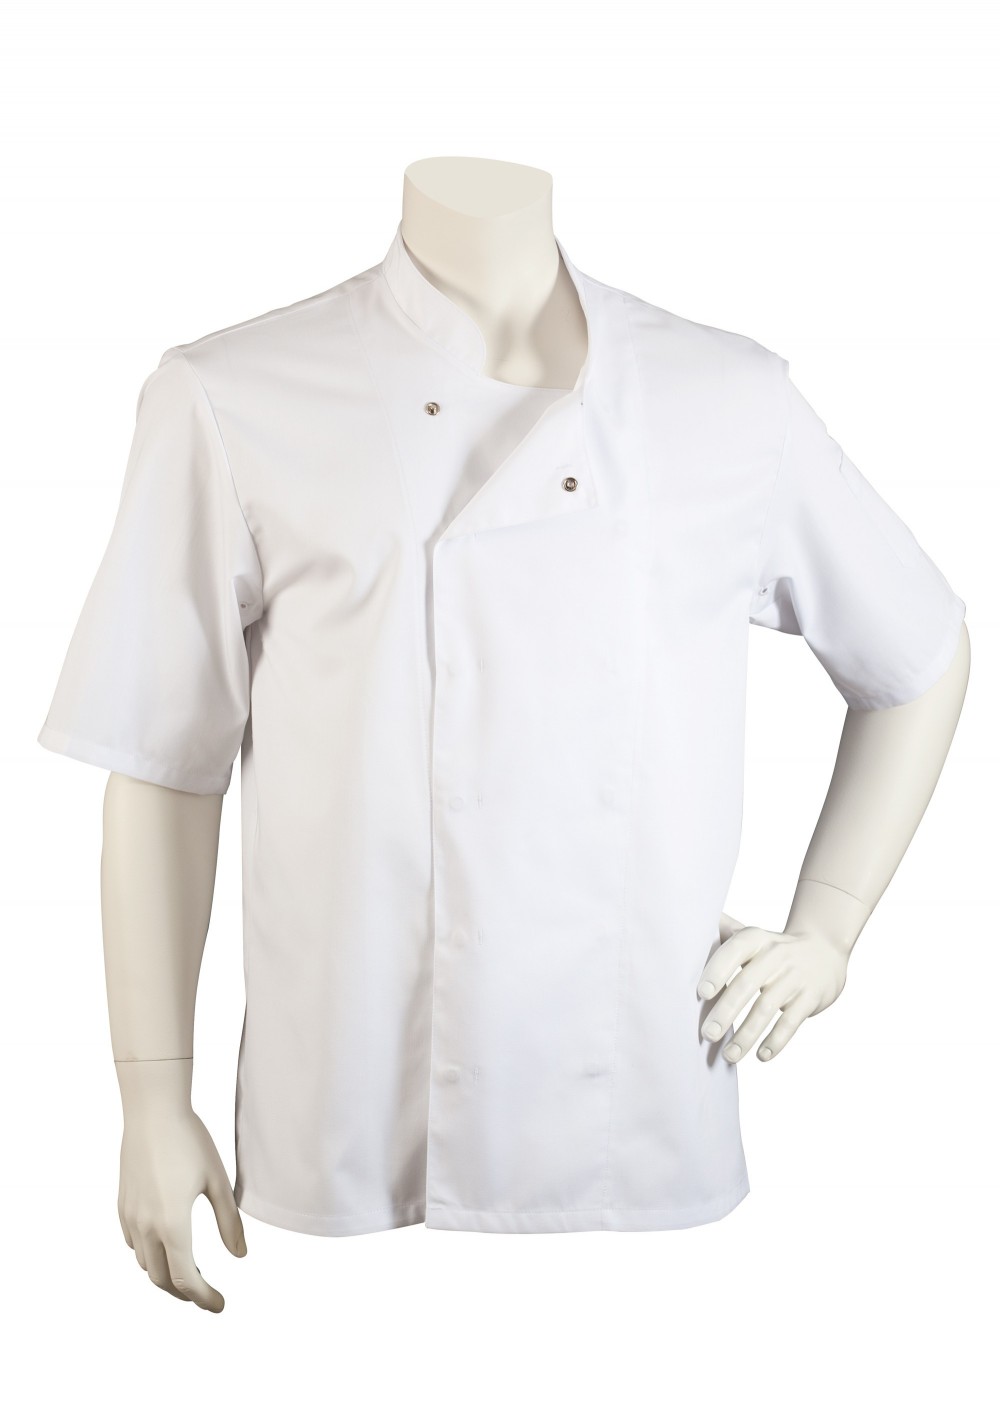 Professional Whites Ryan Unisex Kitchen Chefs Jacket Short Sleeve Size M 